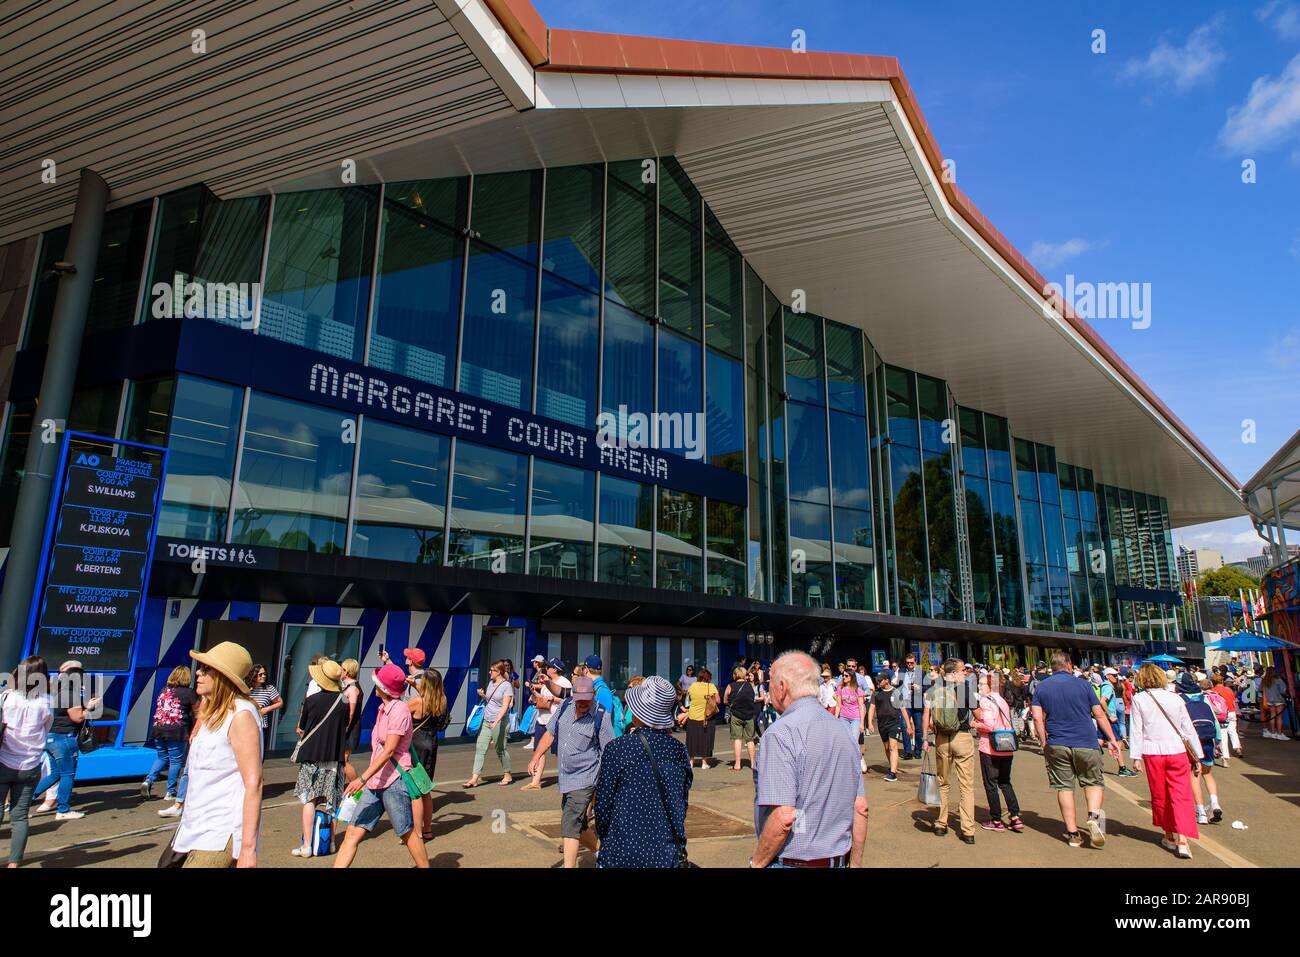 Margaret court Arena pour l'Australian Open 2020, un lieu de tennis au Melbourne Park, Melbourne, Australie Banque D'Images